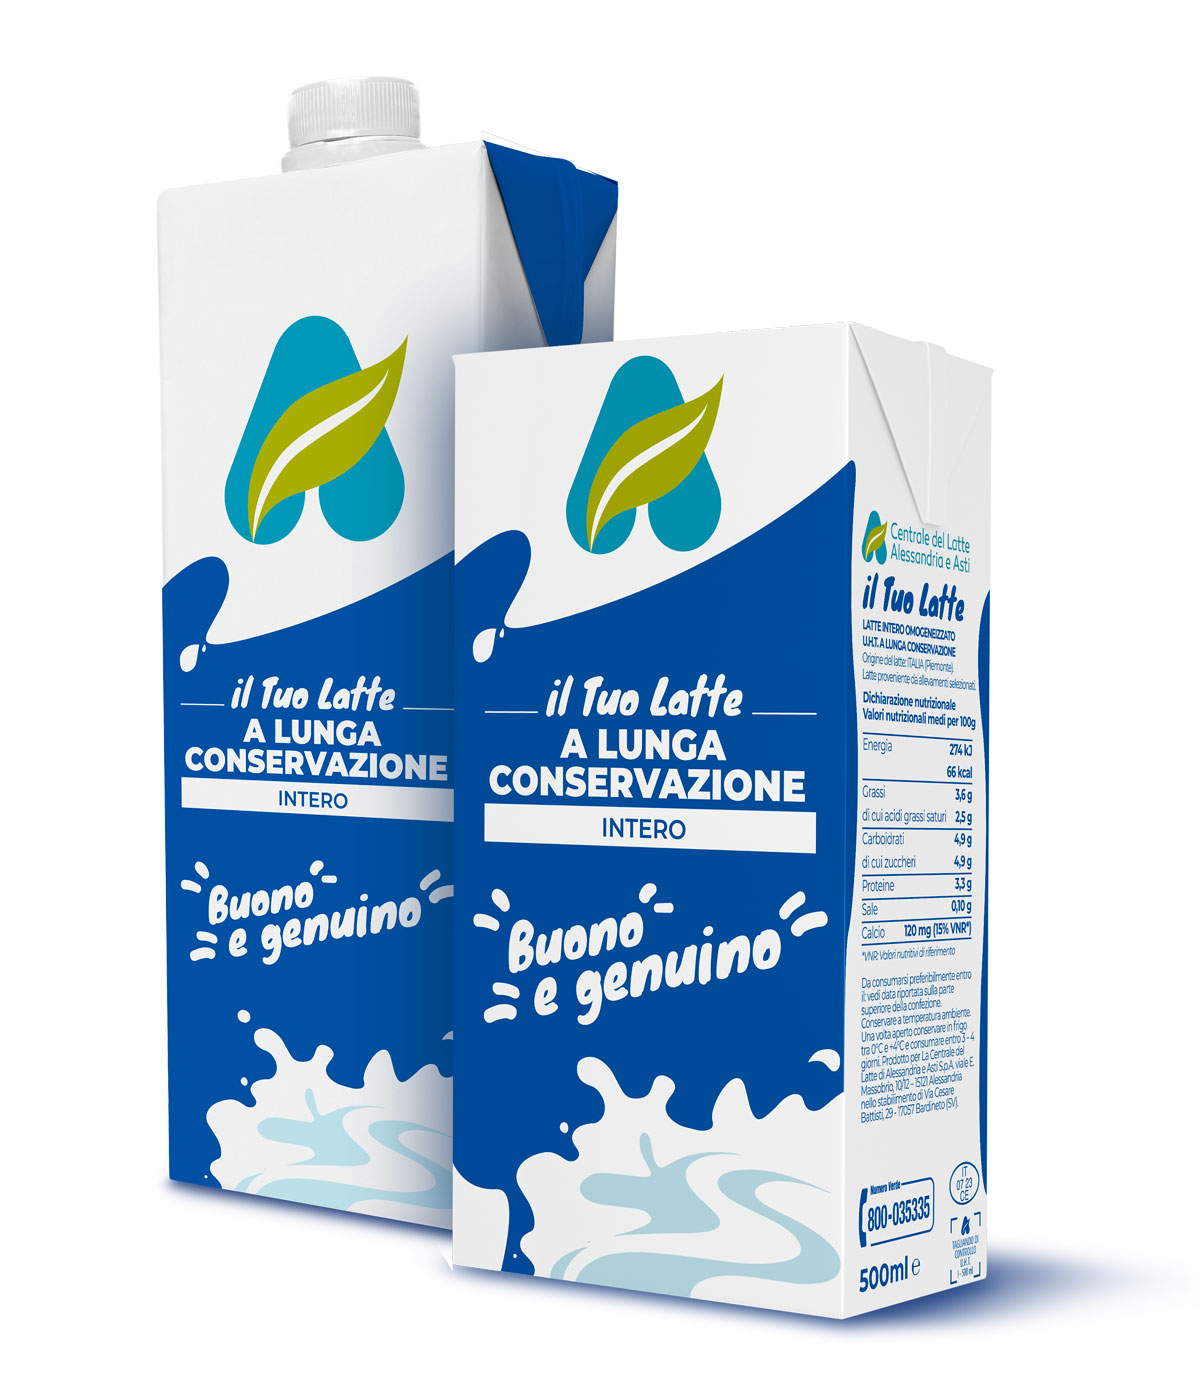 Centrale del Latte di Alessandria e Asti Packaging Latte